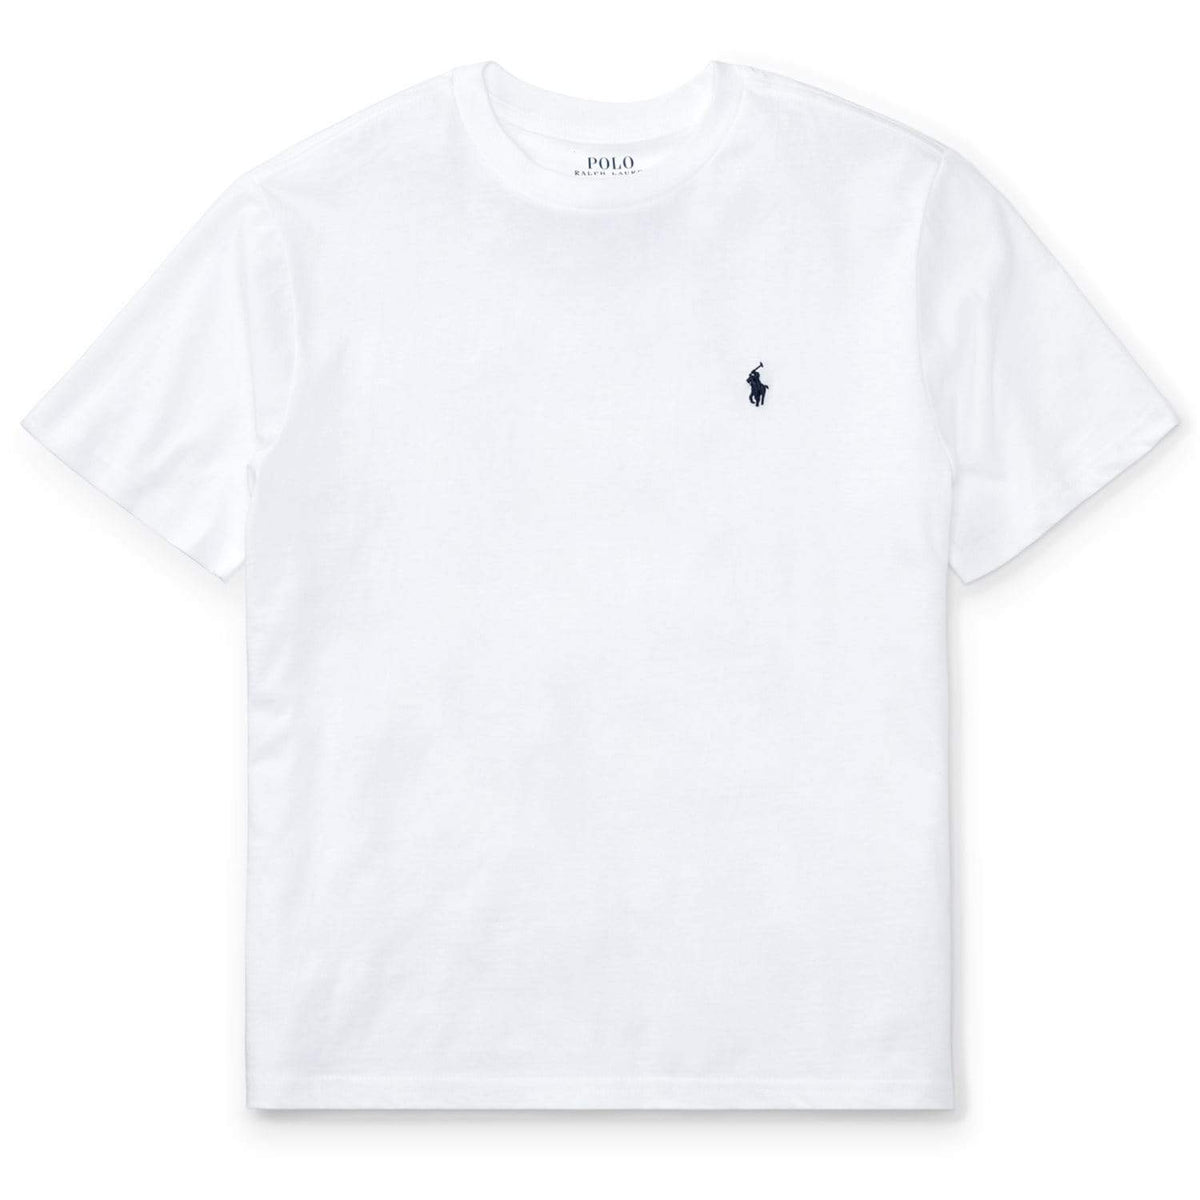 Polo Ralph Lauren - T-Shirts - Kids Polo Ralph Lauren White T-Shirt